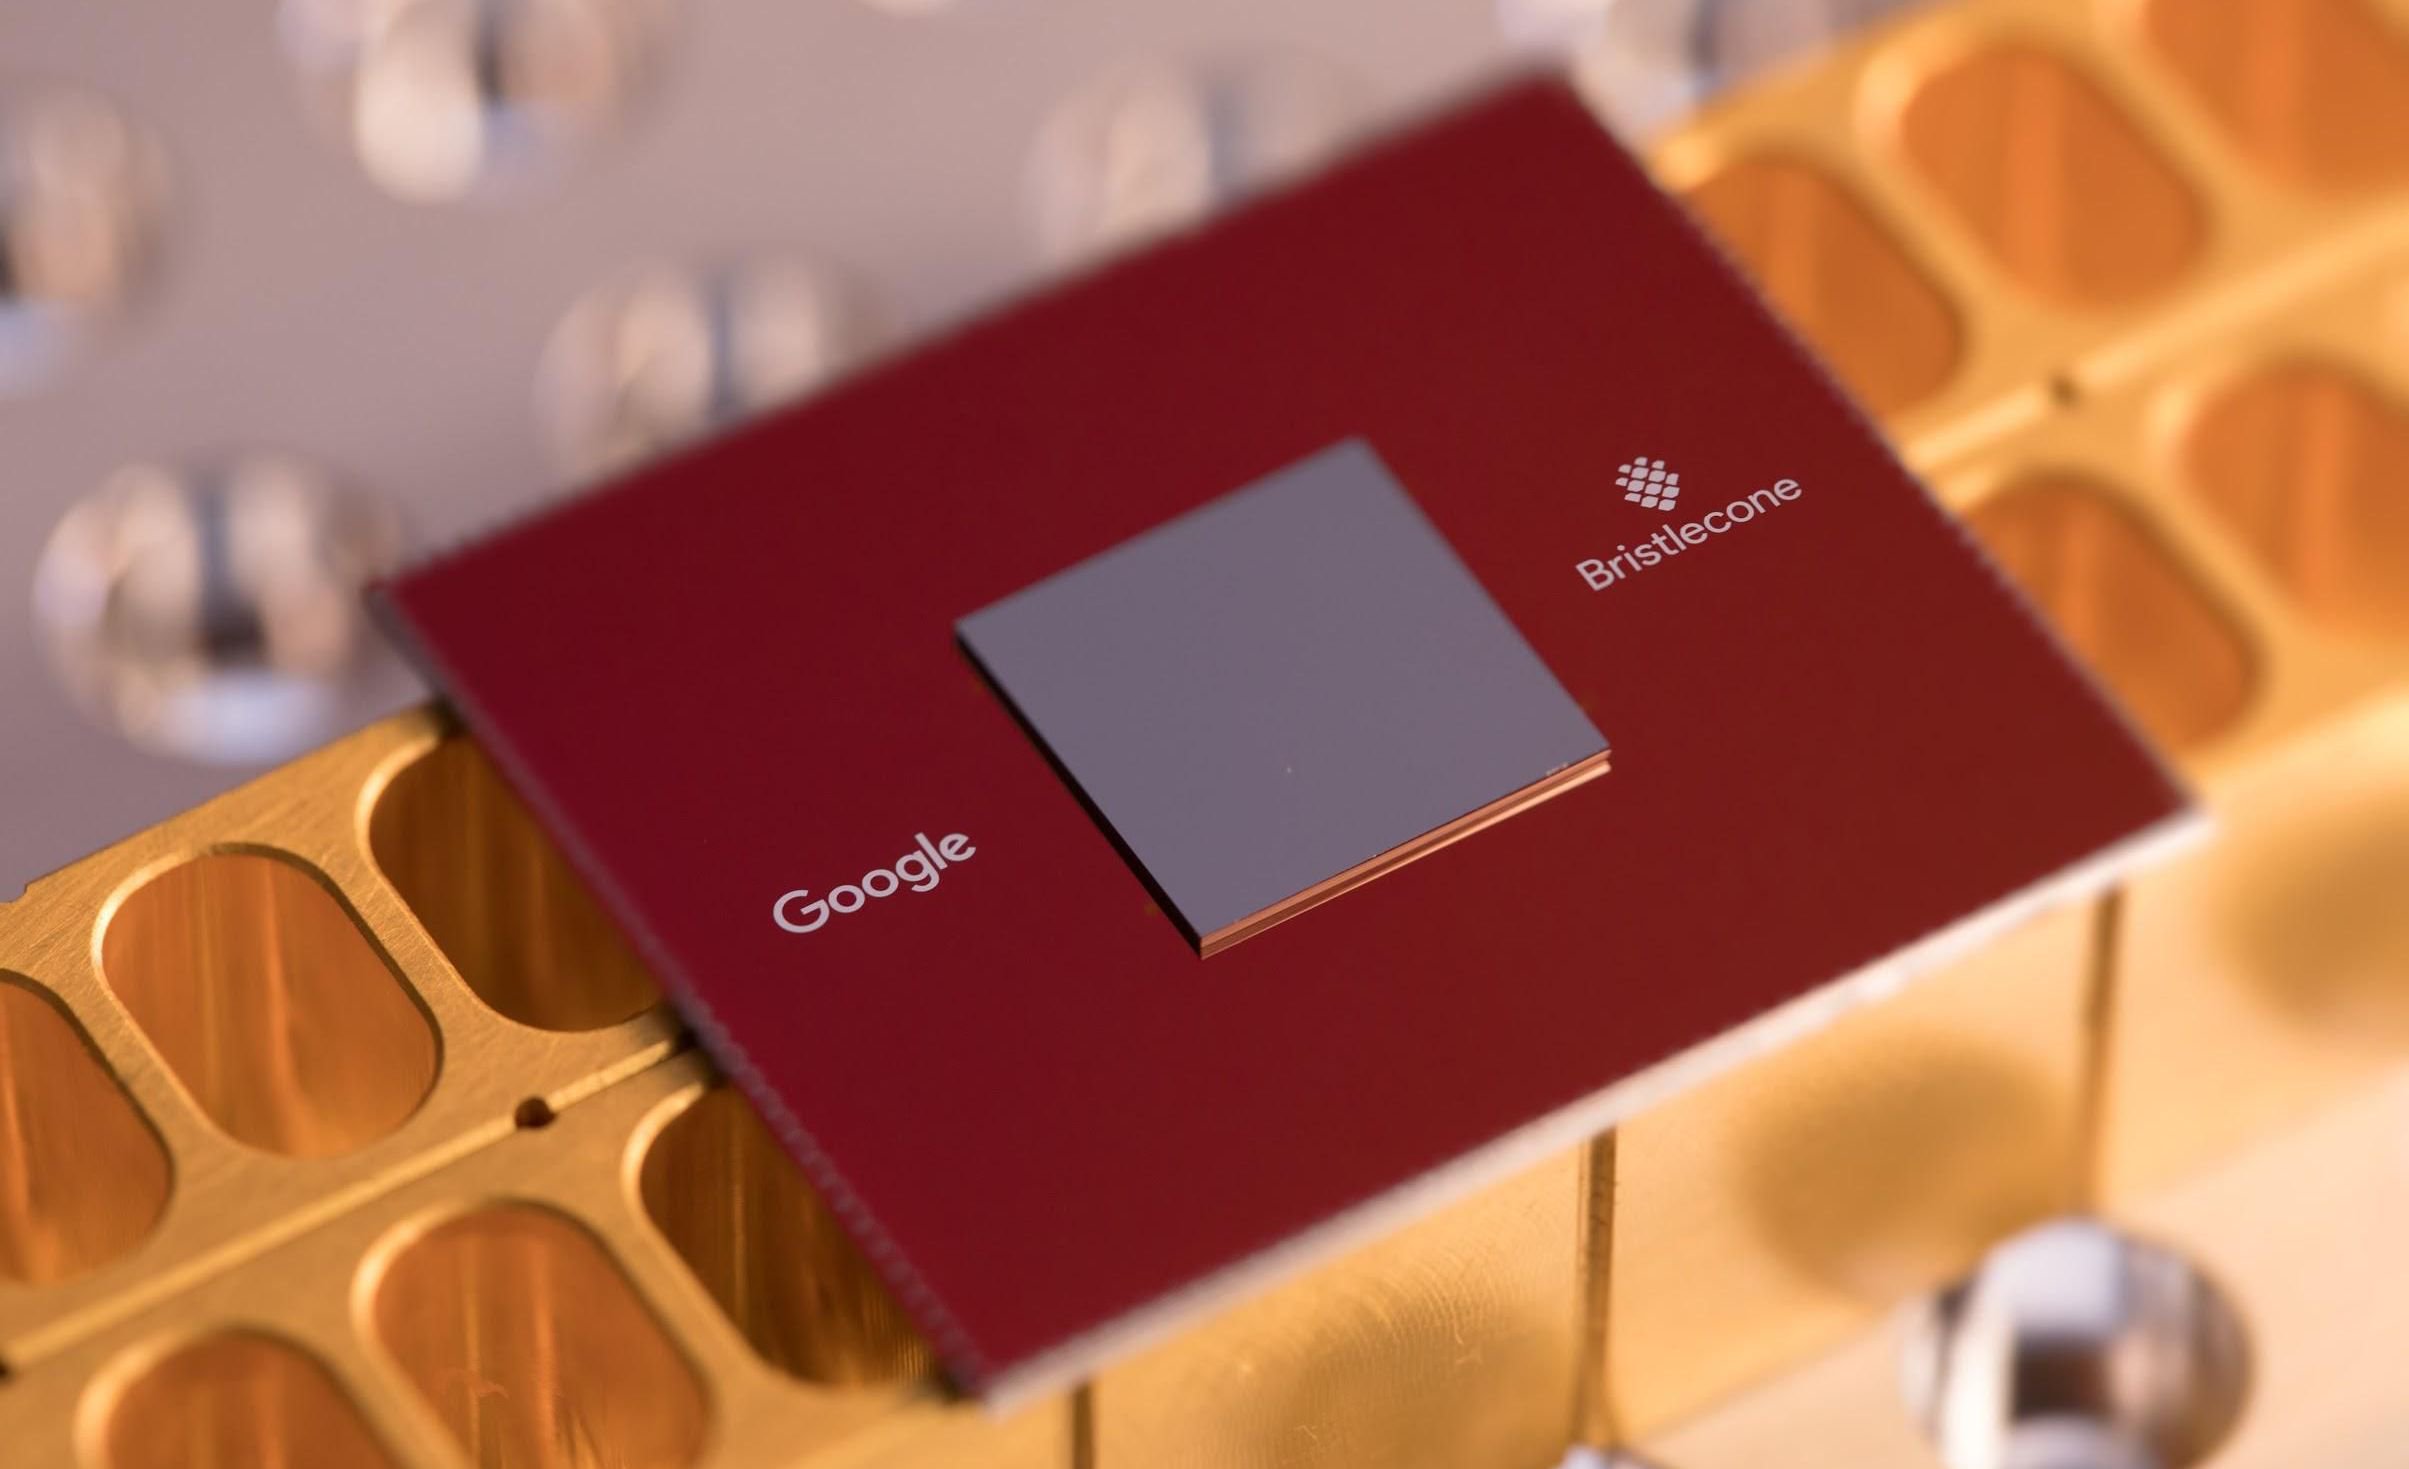 Google avduket sin nye quantum prosessor Bristlecone